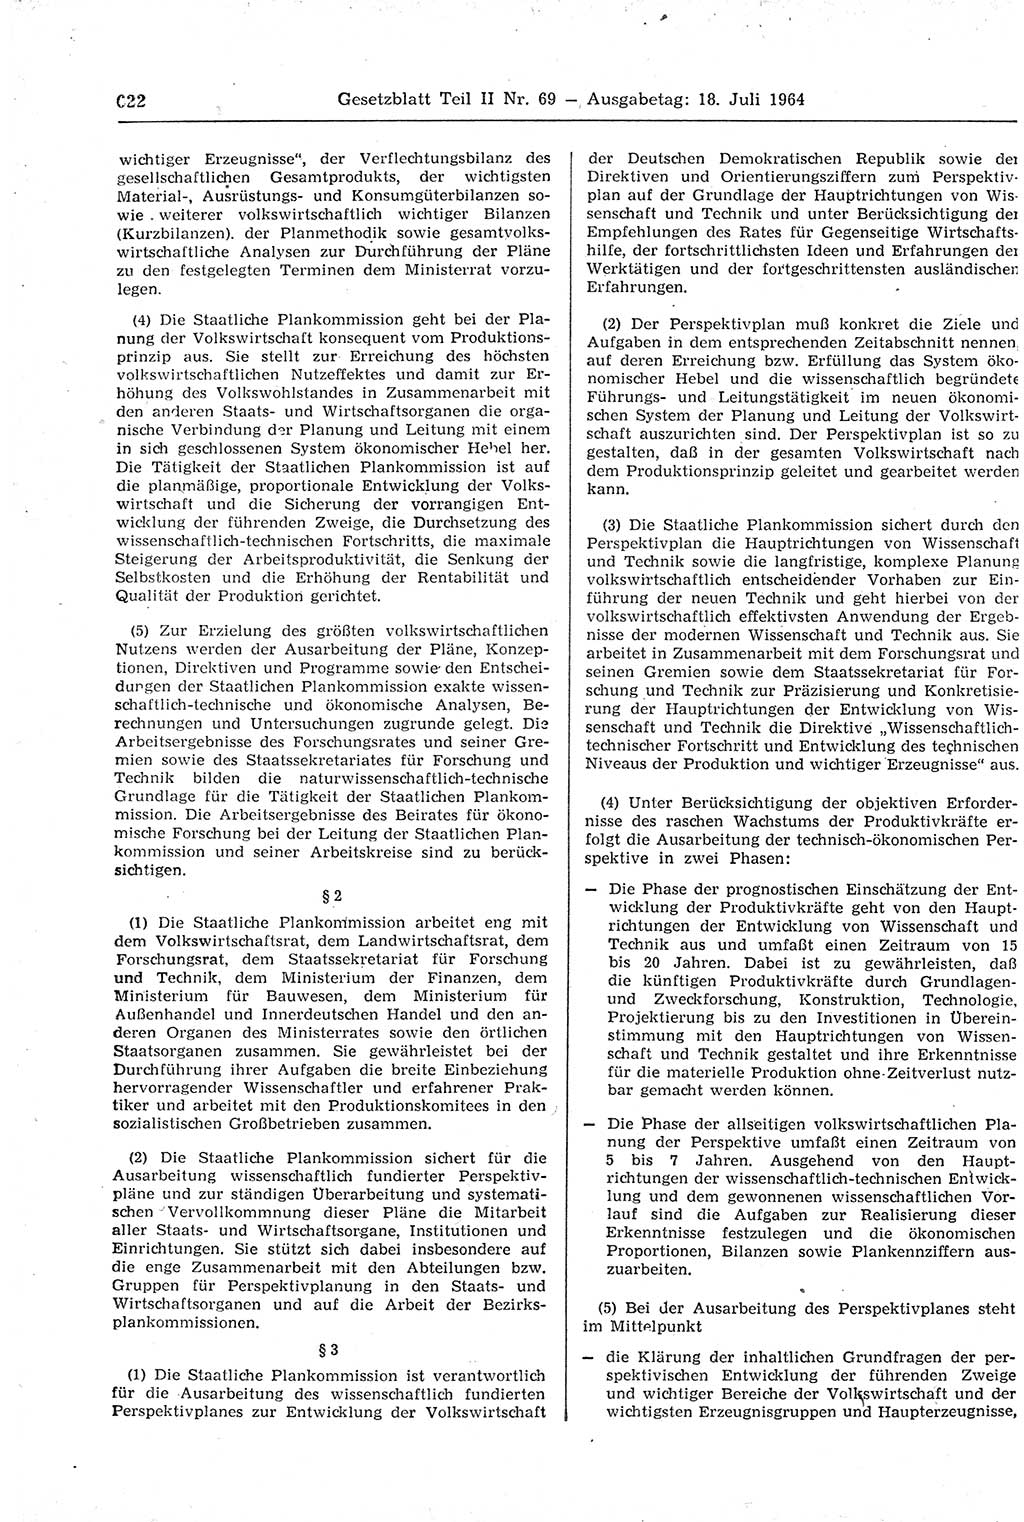 Gesetzblatt (GBl.) der Deutschen Demokratischen Republik (DDR) Teil ⅠⅠ 1964, Seite 622 (GBl. DDR ⅠⅠ 1964, S. 622)